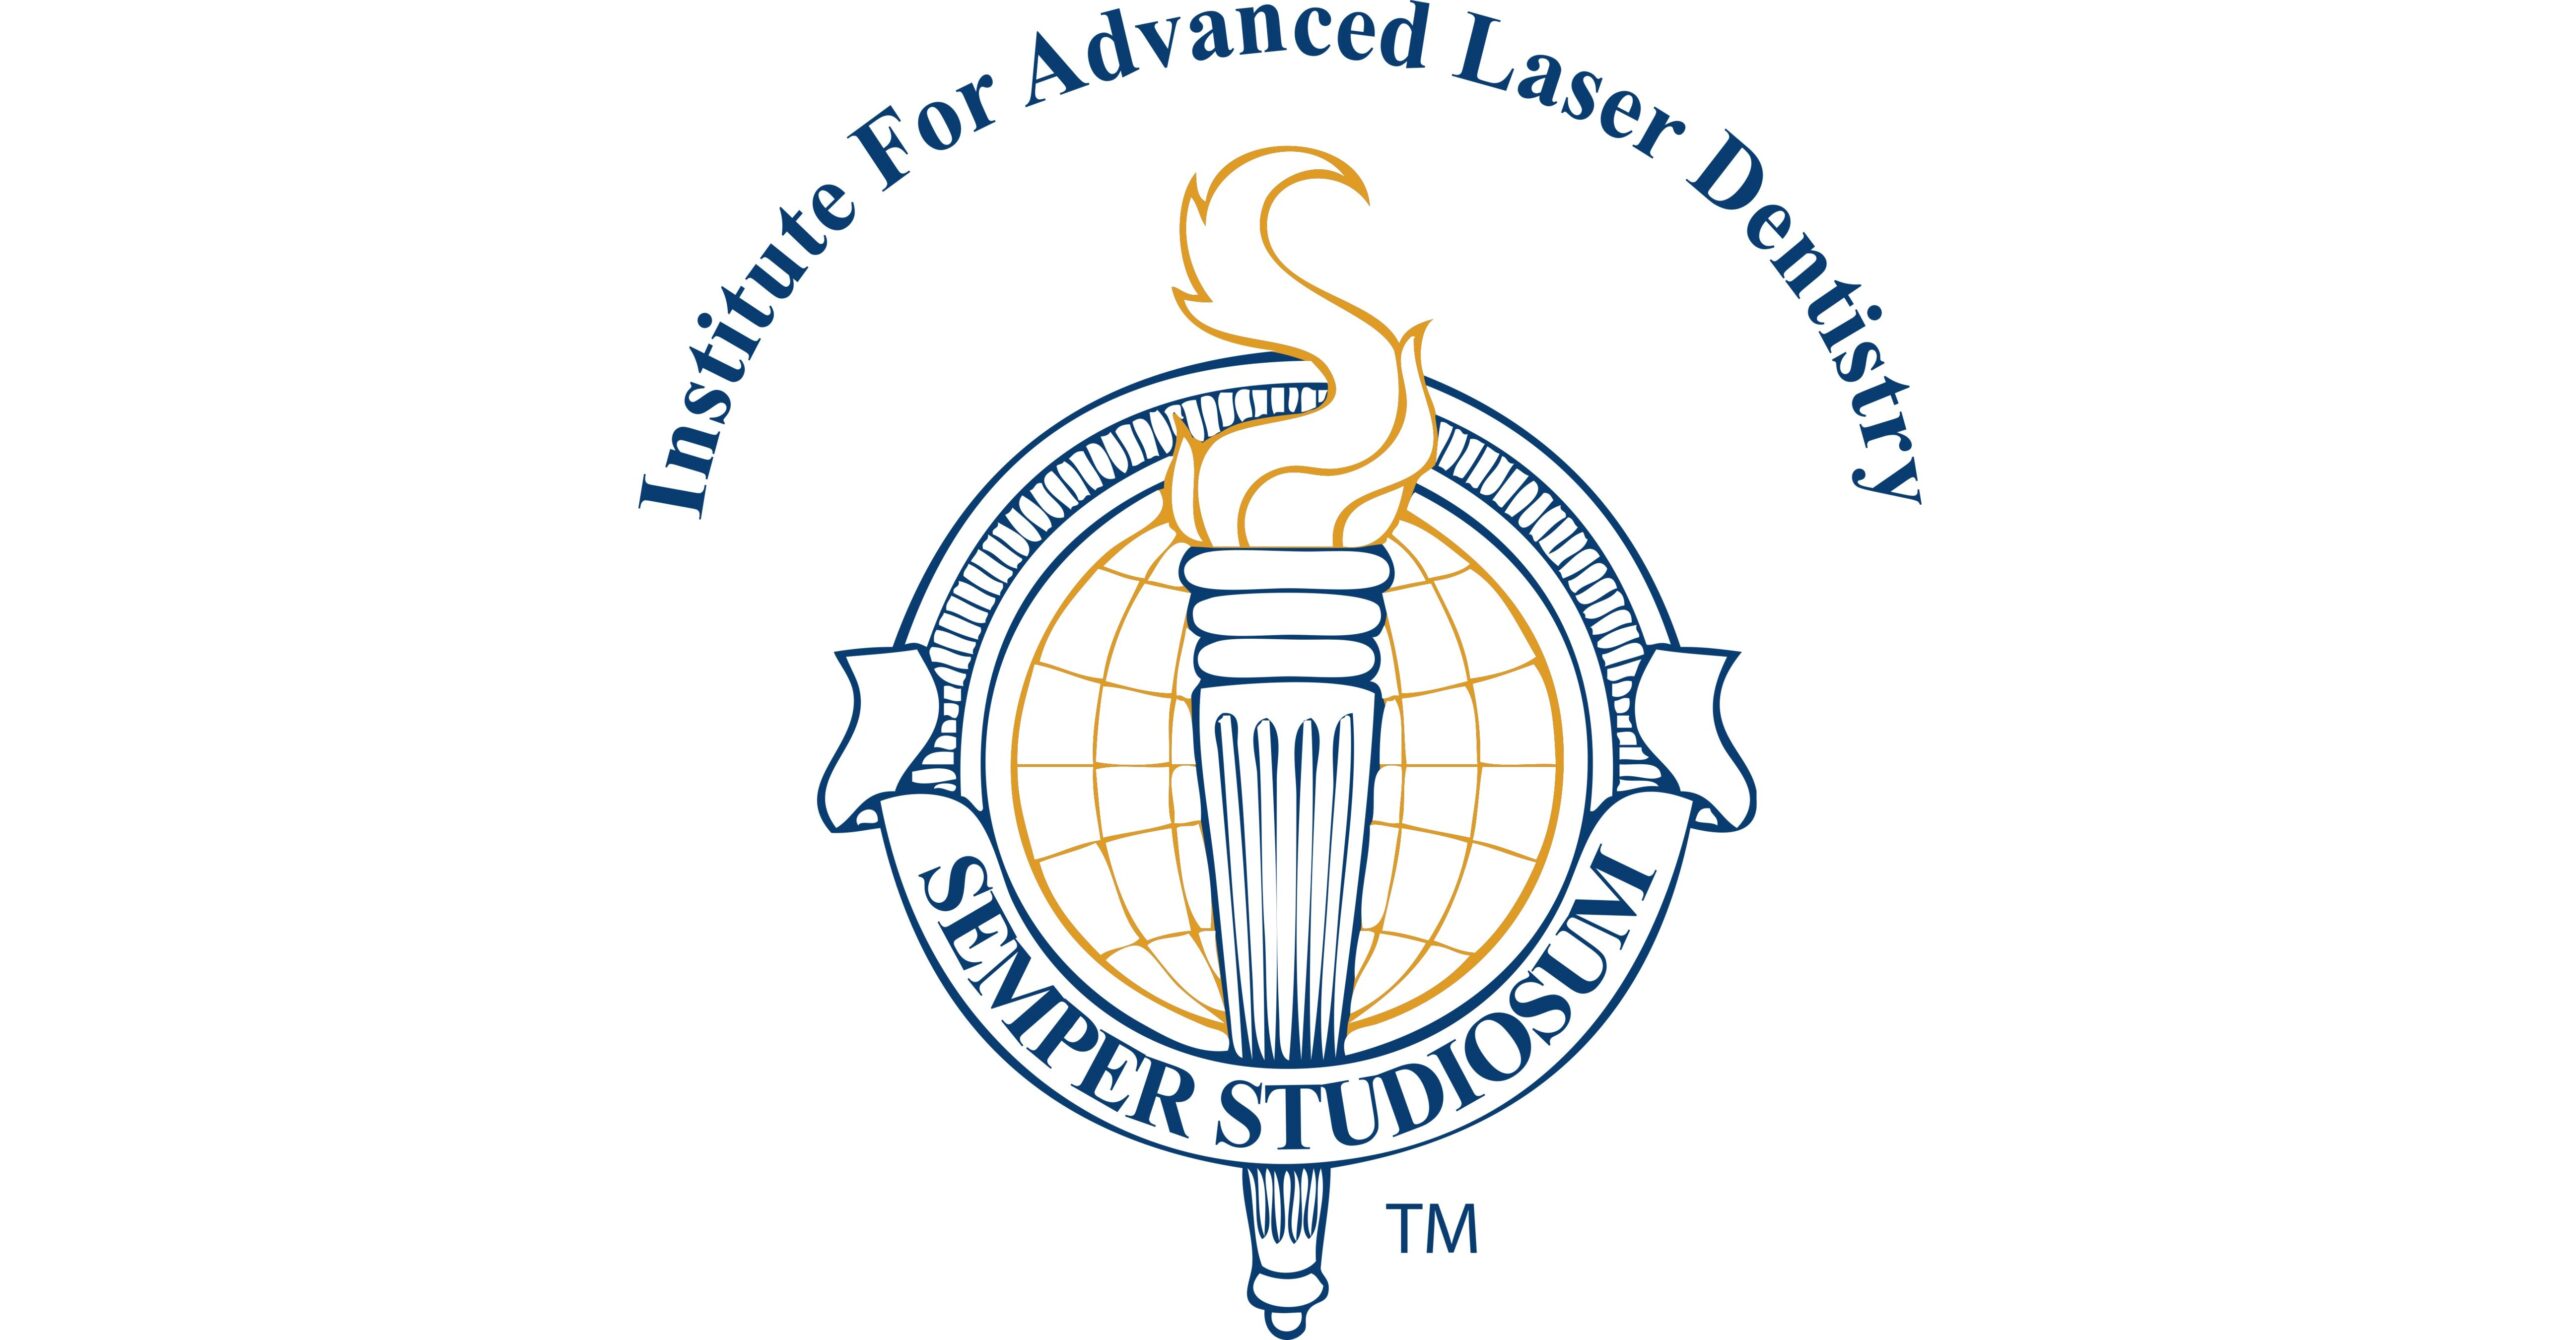 IALD Logo - Shady Grove Periodontics & Implants